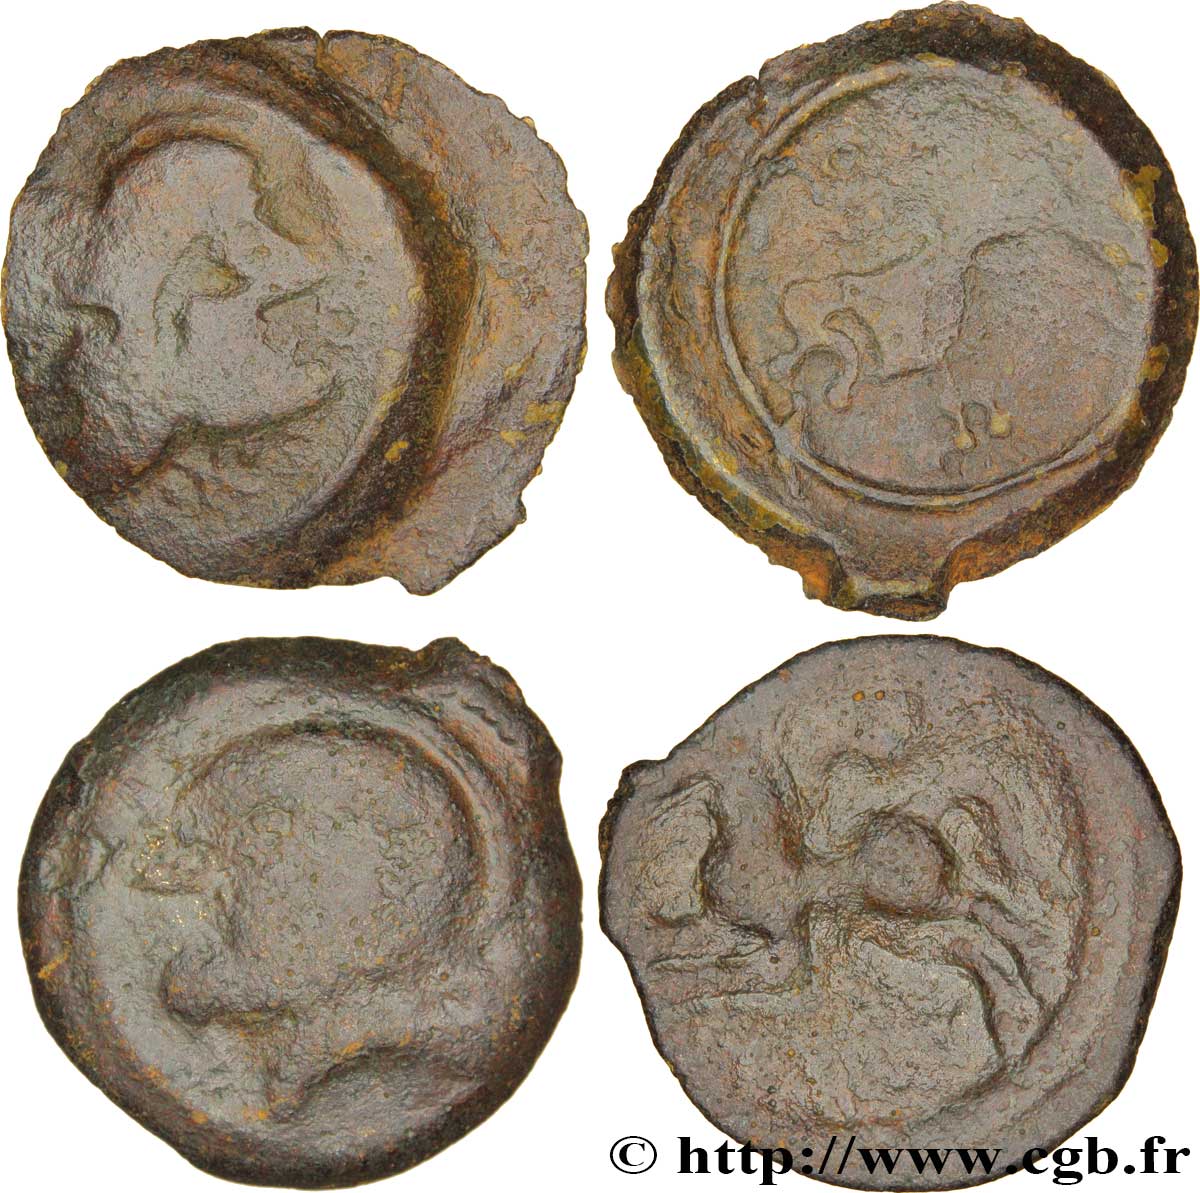 SUESSIONS (région de Soissons) Lot de 2 bronze, CRICIRV et à la tête janiforme, classe II lot